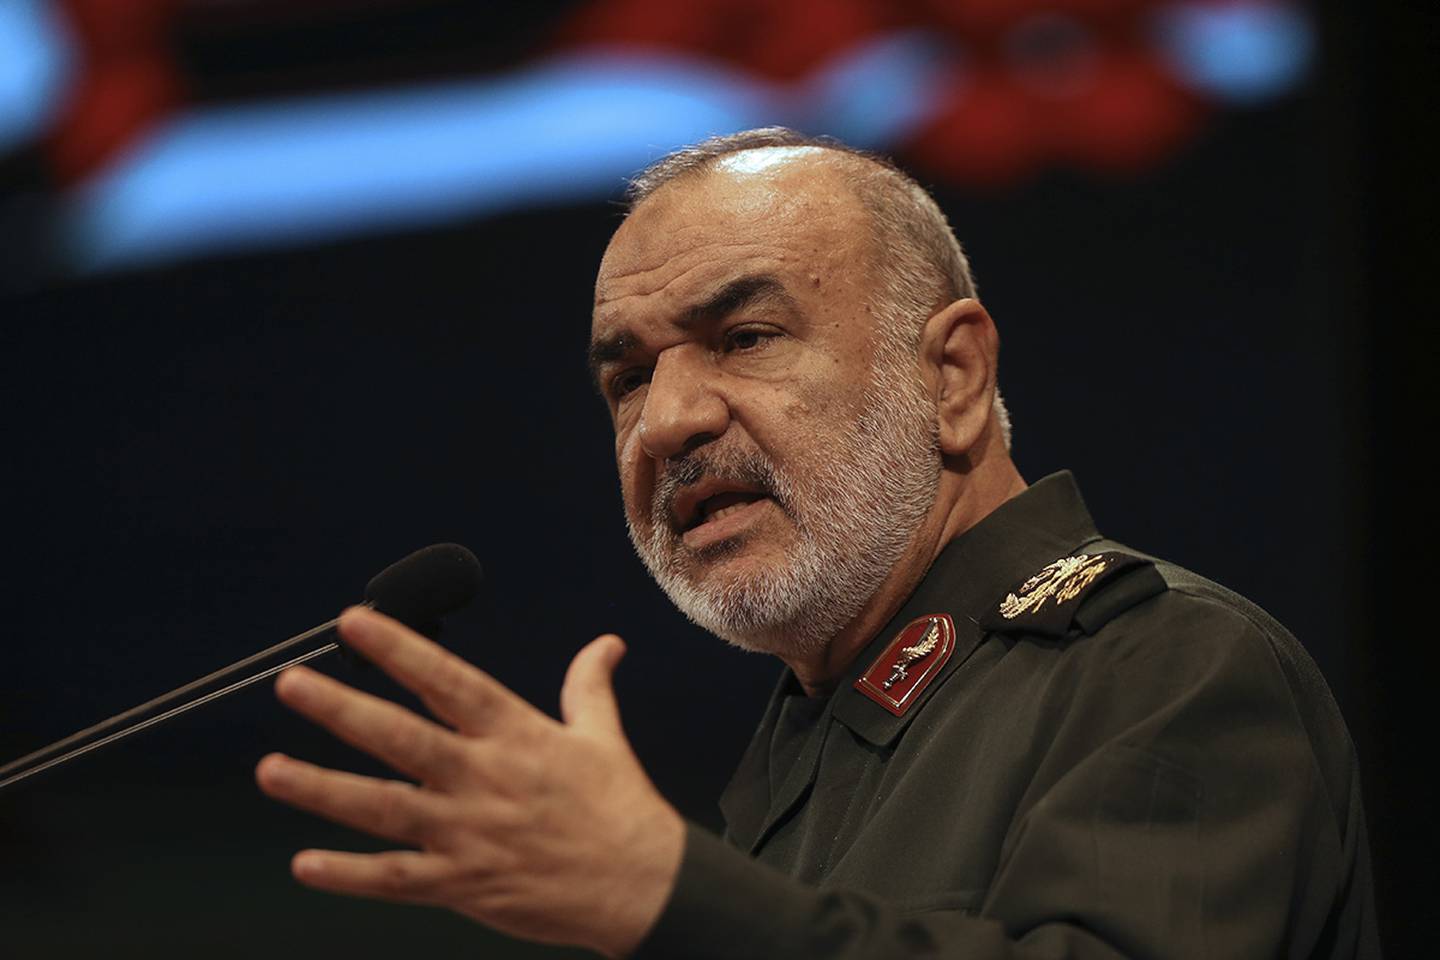 the then deputy commander of Iran's Revolutionary Guard Gen. Hossein Salami speaks in a conference in Tehran, Iran.